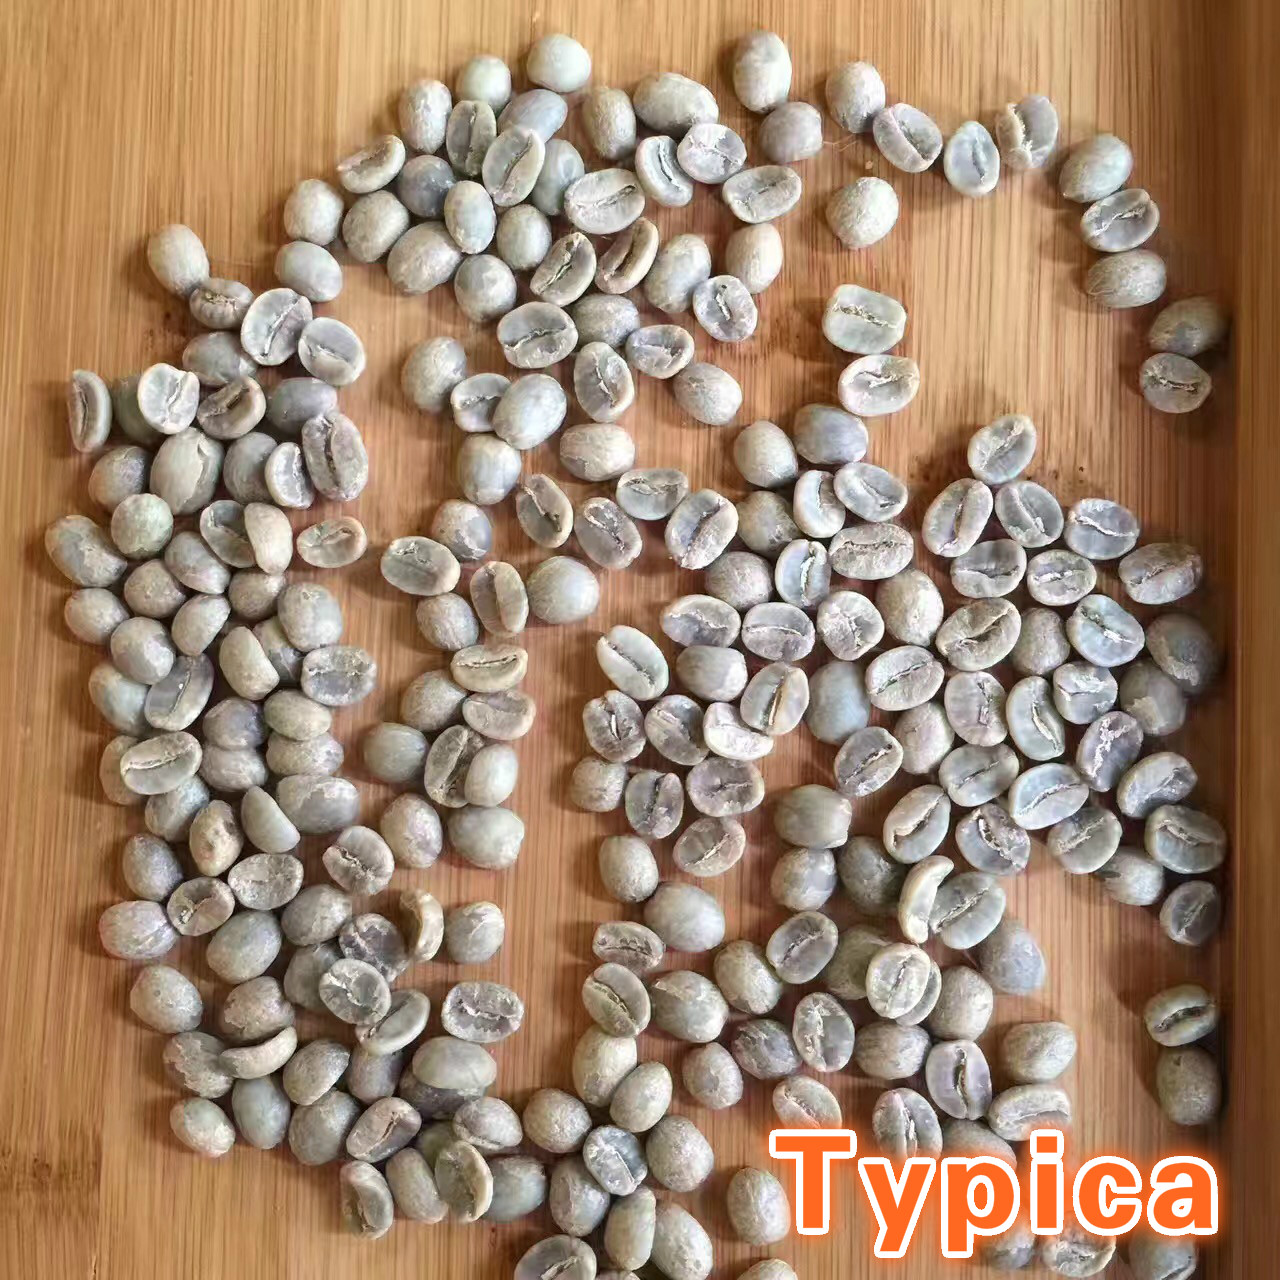 品鑑雲南小粒花果山Typica鐵皮卡阿拉比卡精品咖啡豆